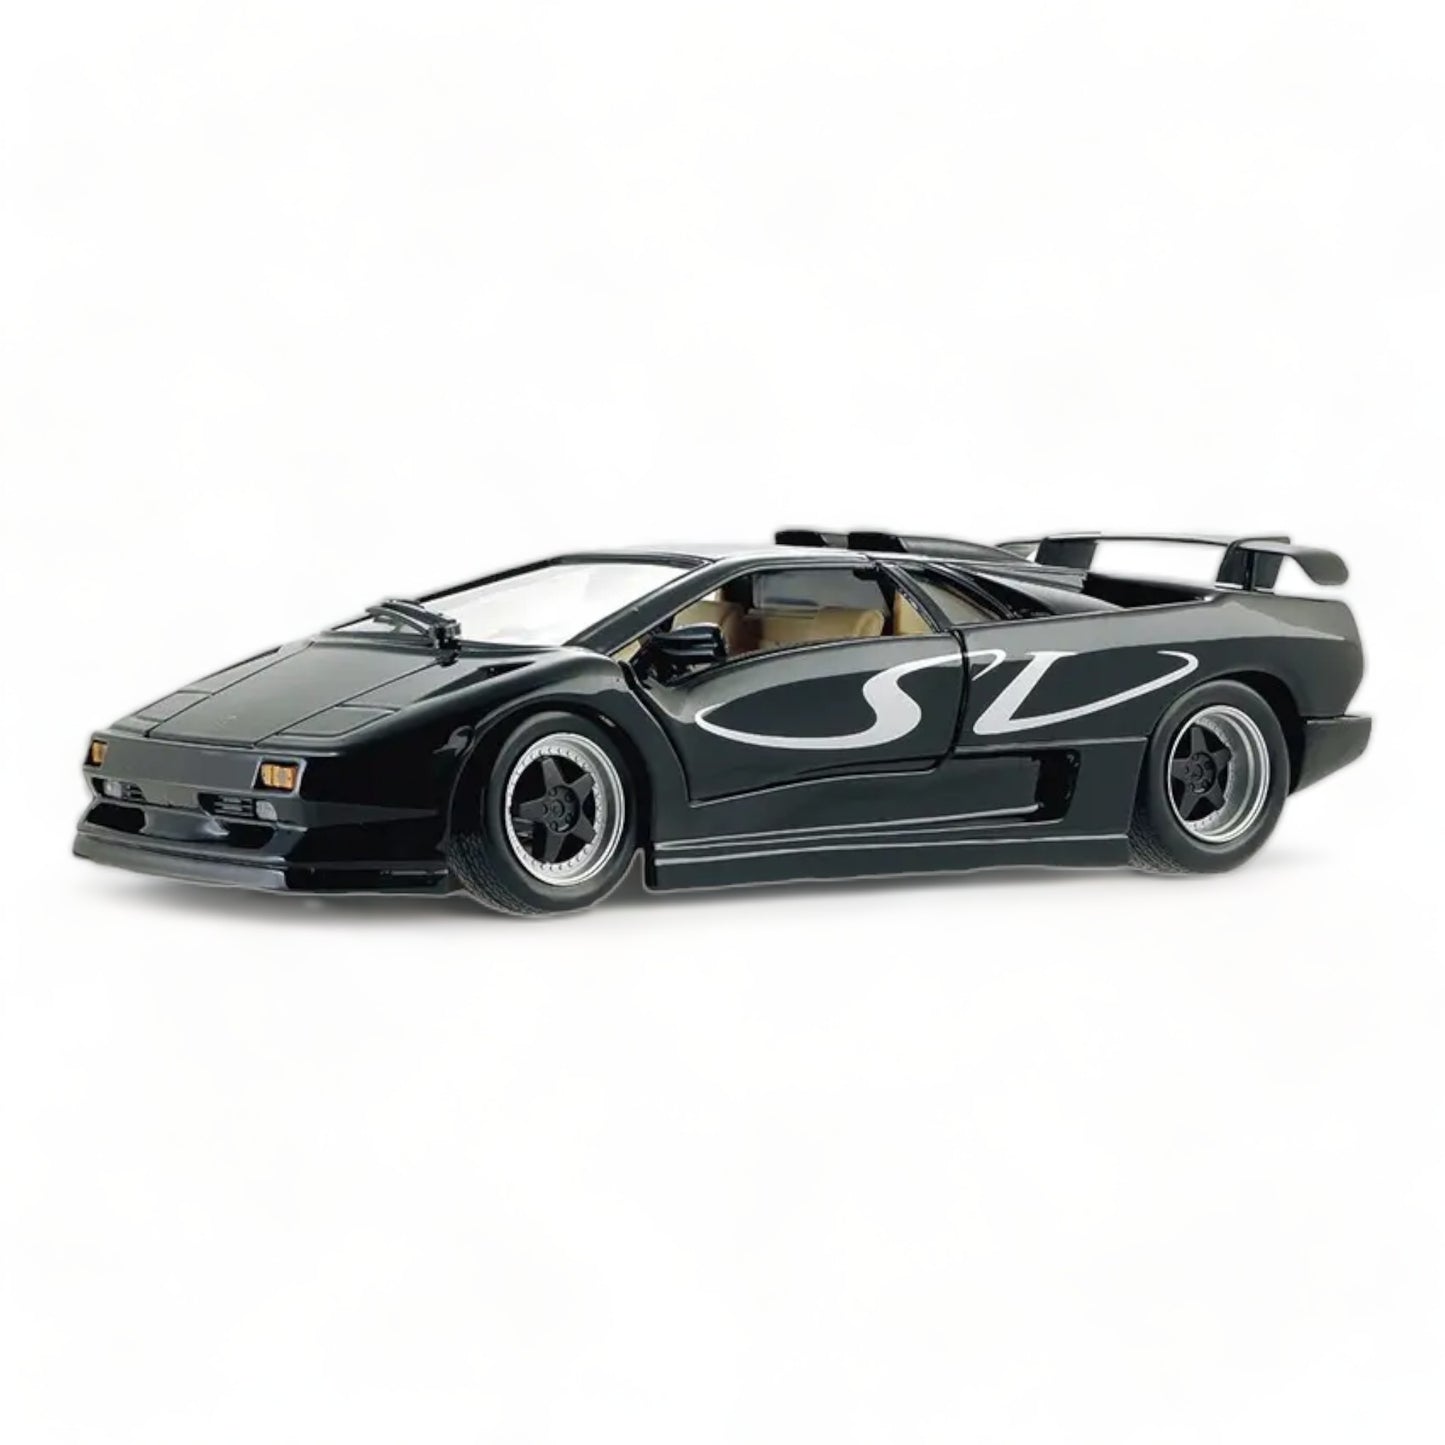 1/18 Diecast Lamborghini Diablo SV Black Scale Model Car by Maisto